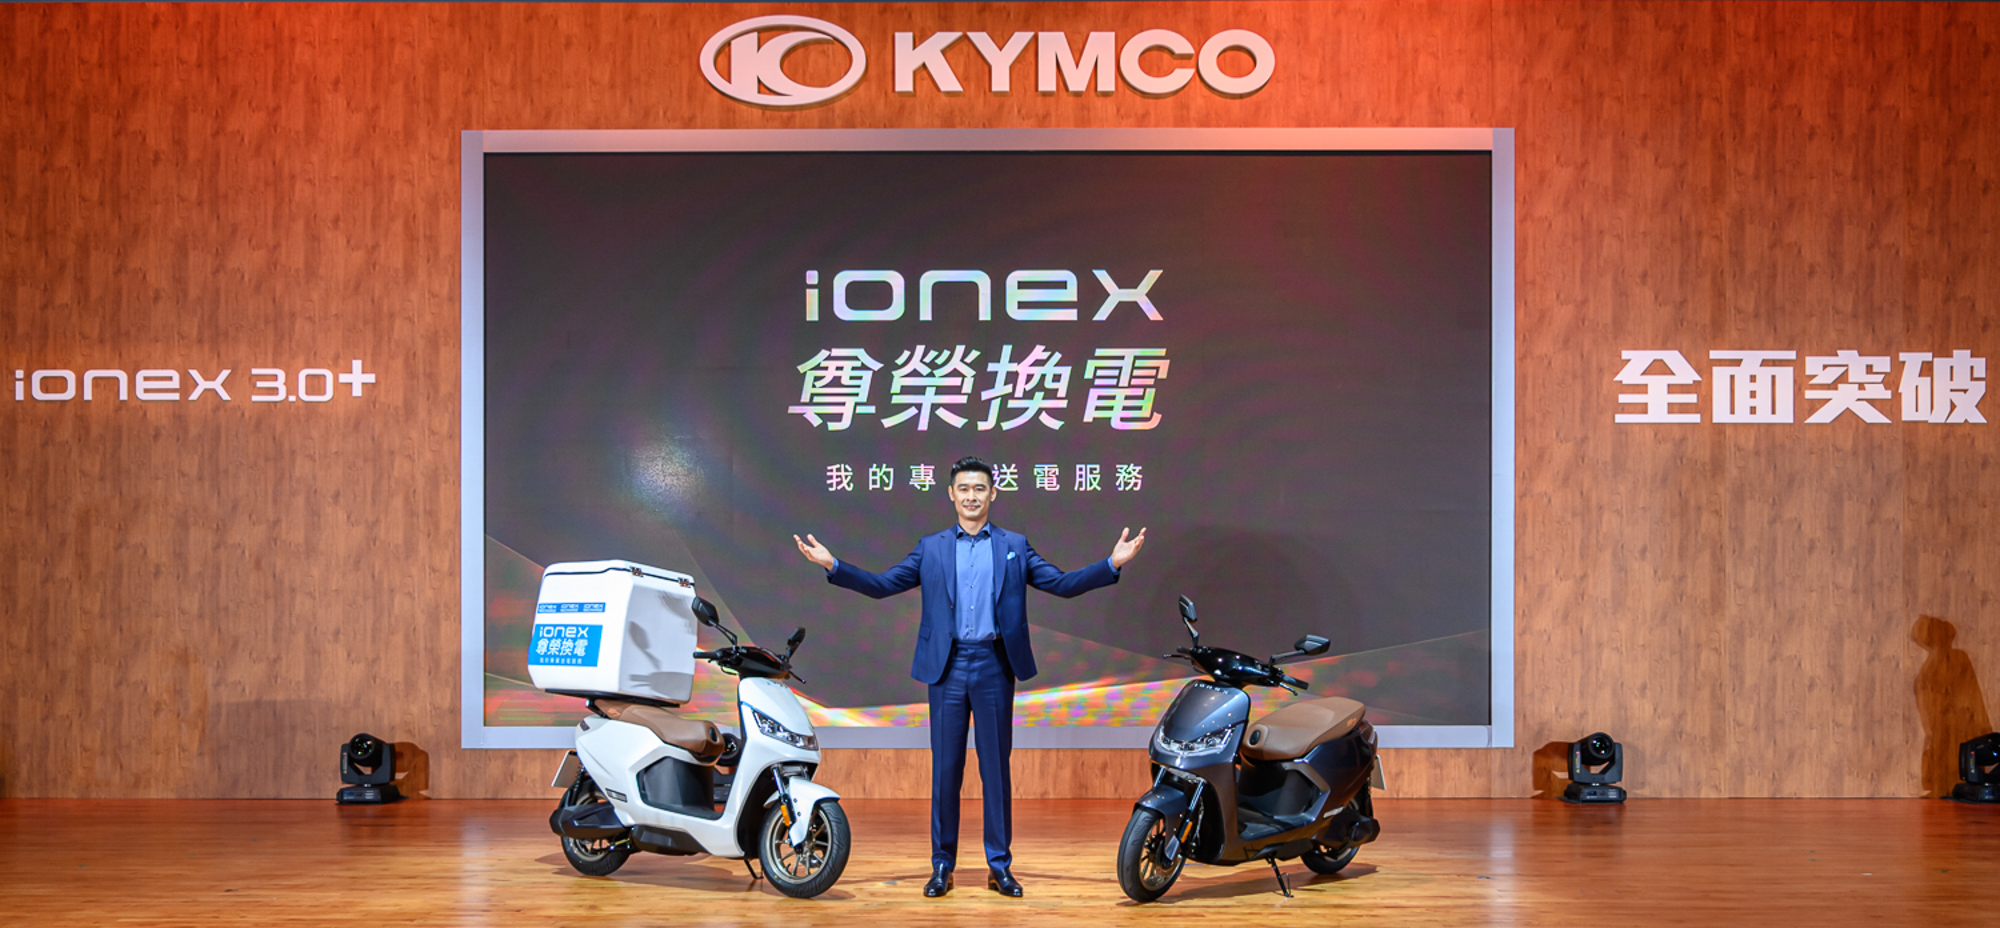 KYMCO 新推「Ionex 尊榮換電」！電池到府親送年底前 Ionex 3.0 車主免費享受